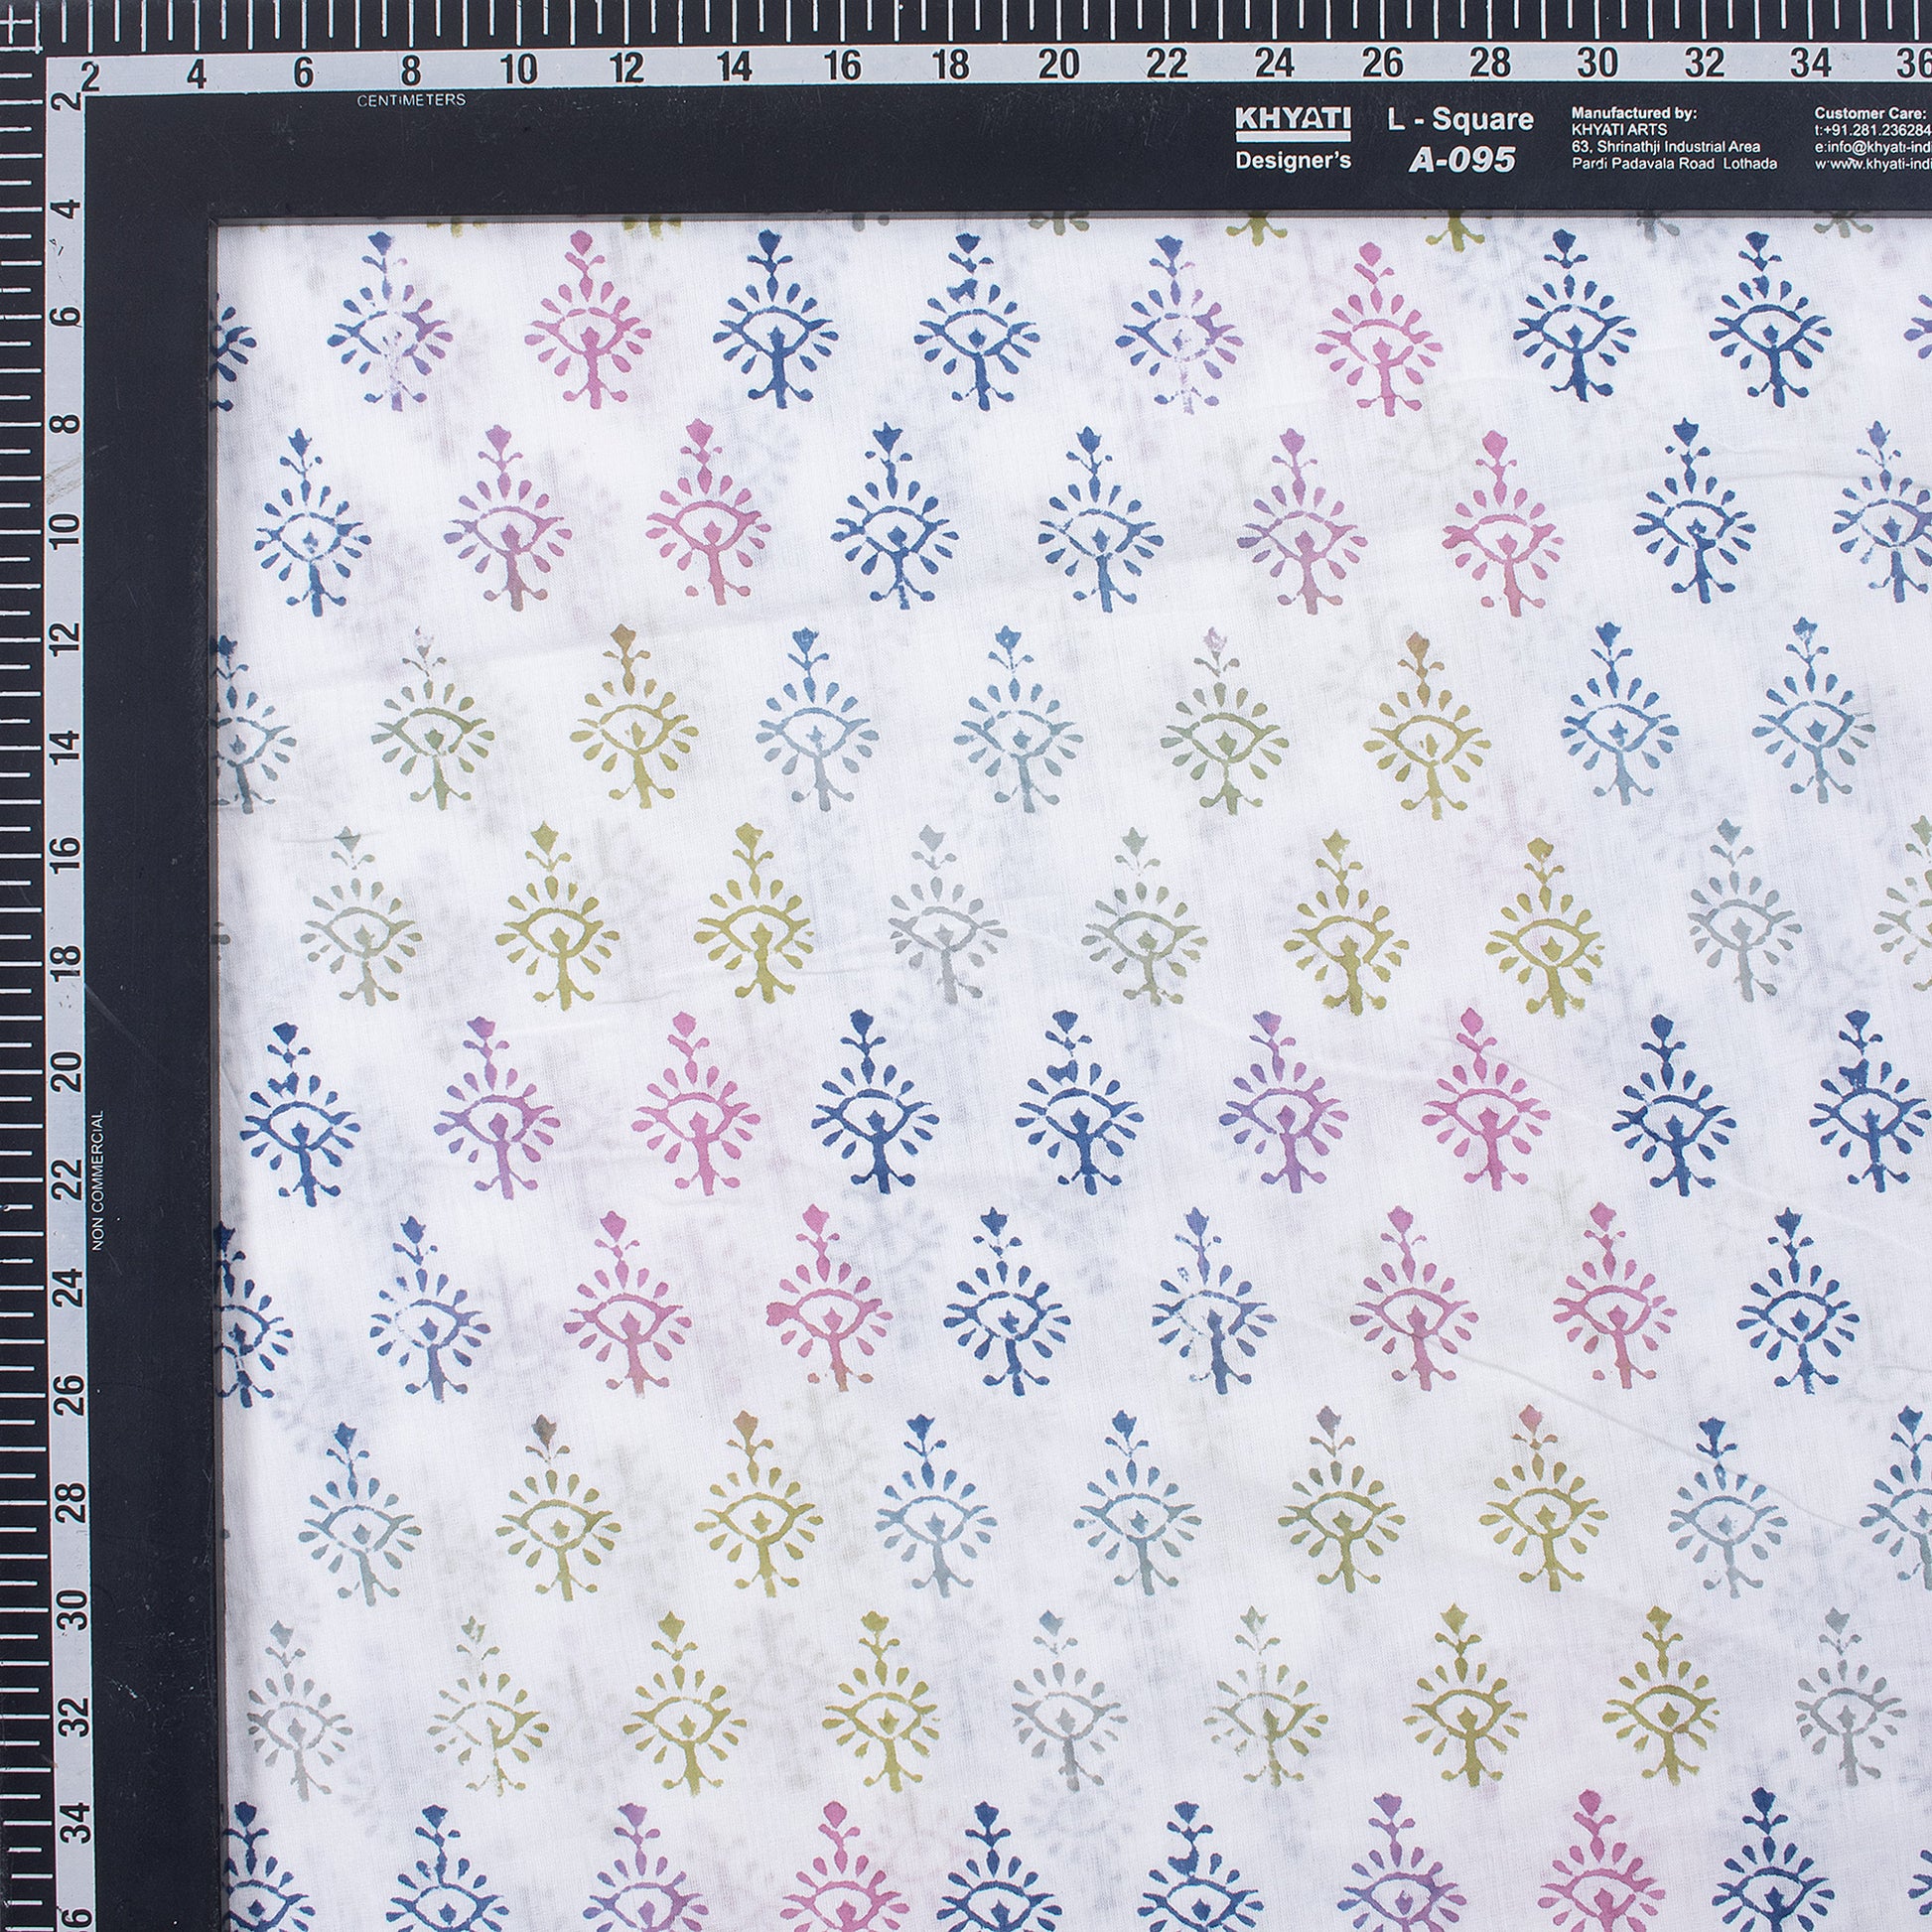 Rainbow Print Organic Cotton Fabric